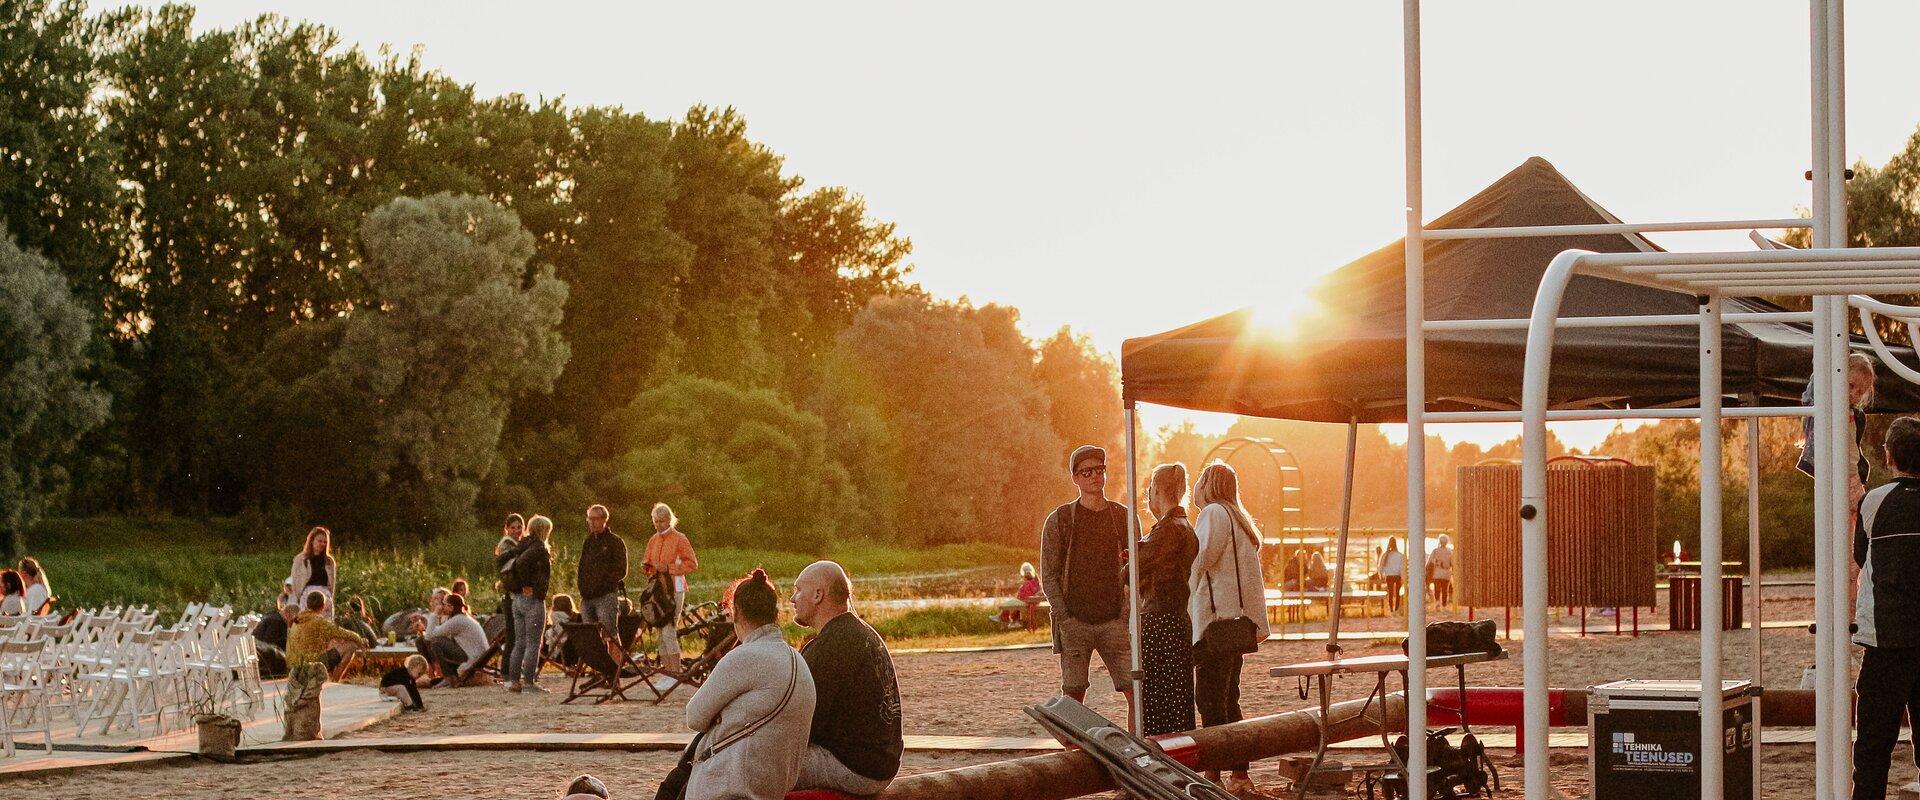 Der städtische Badestrand liegt im Ülejõe Stadtviertel von Tartu am linken Ufer vom Fluss Emajõgi und gilt im Sommer als ein populärer Urlaubs- und Er